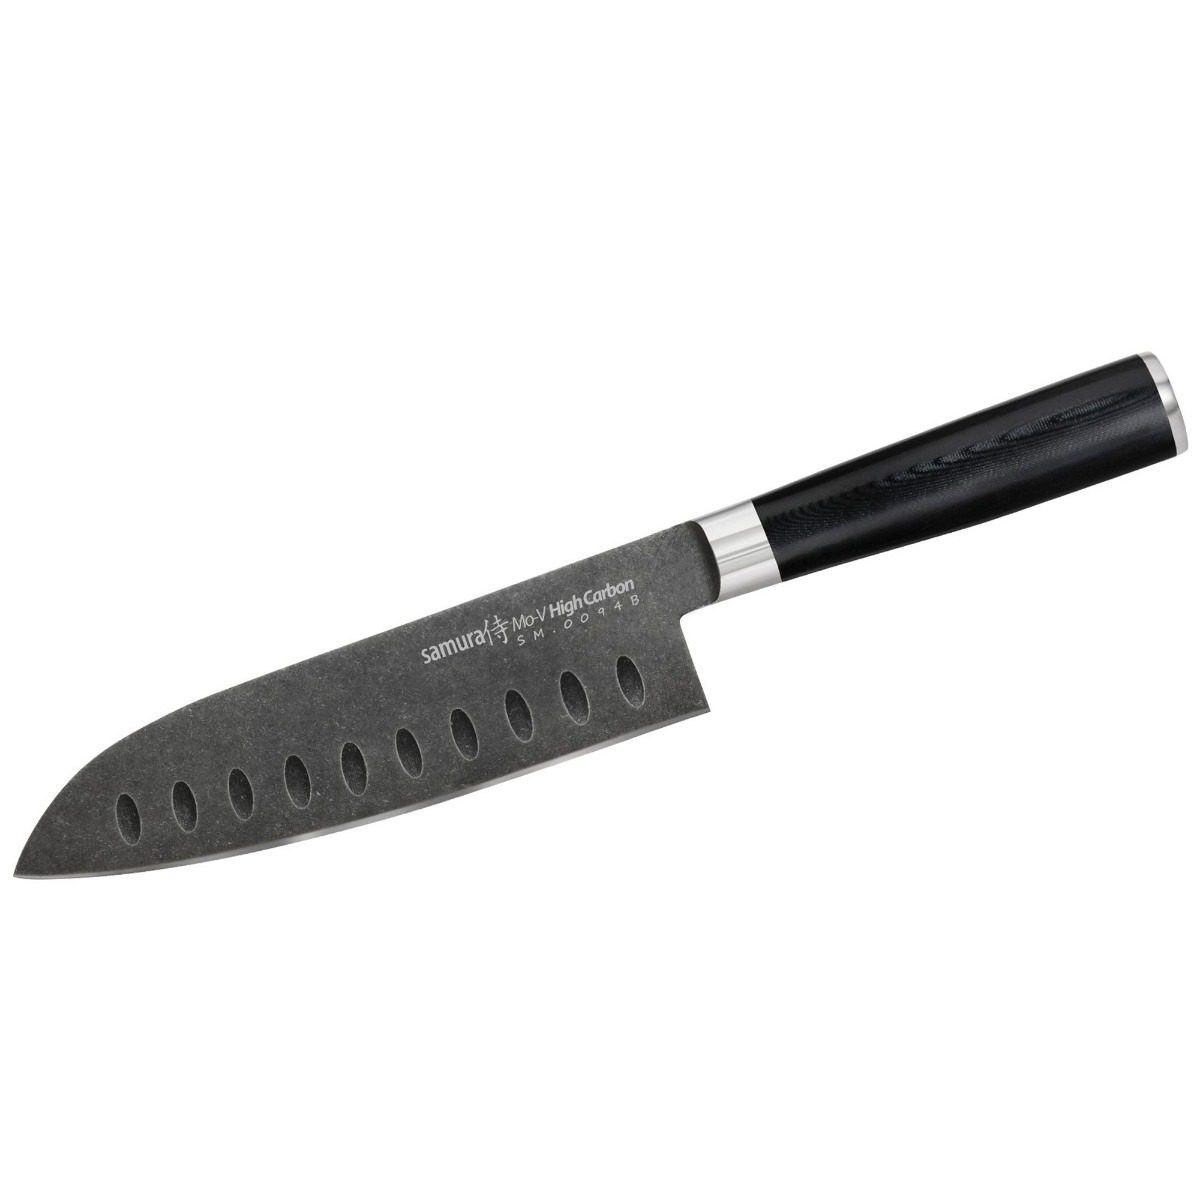 Μαχαίρι Santoku 18cm